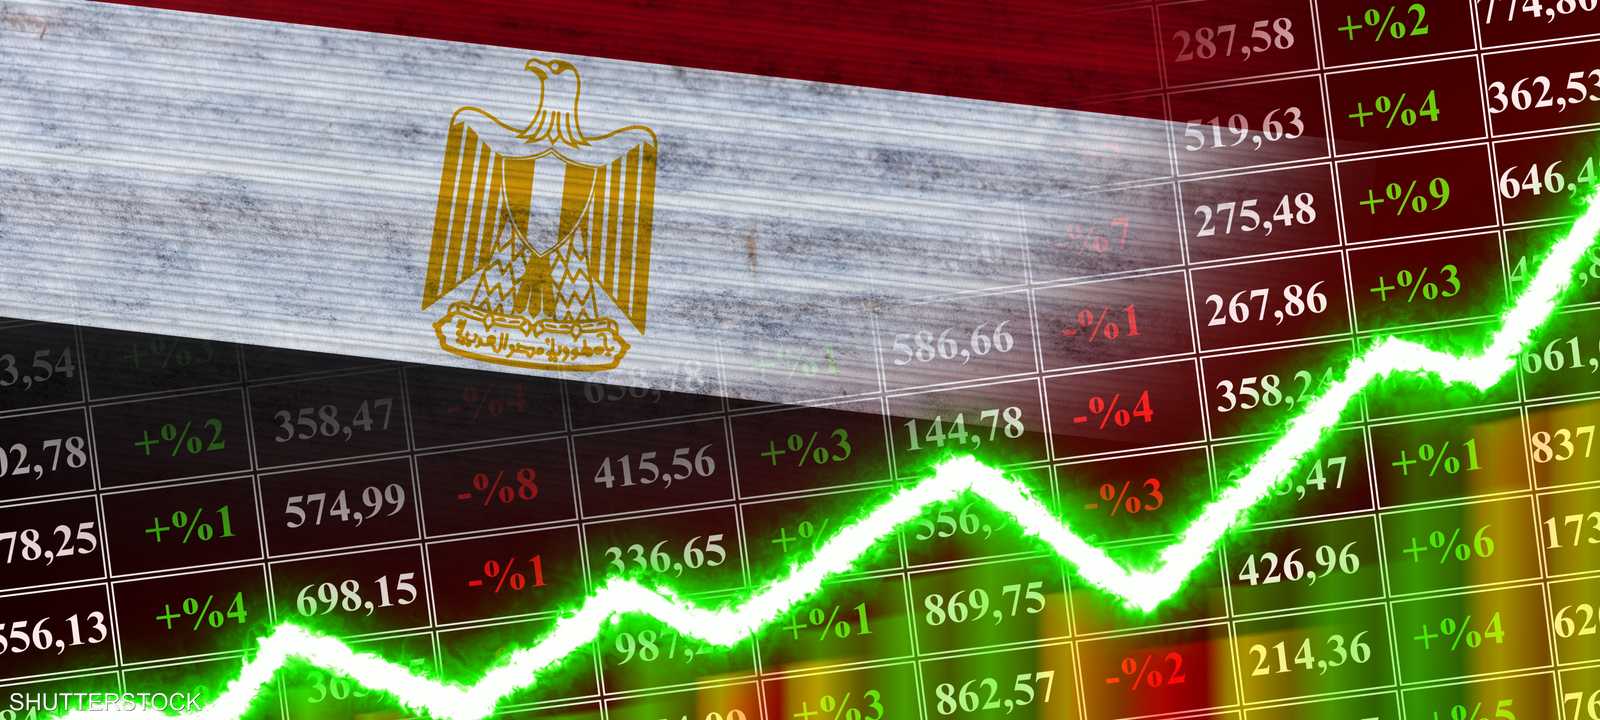 البورصة المصرية تحقق أفضل أداء سنوي في تاريخها